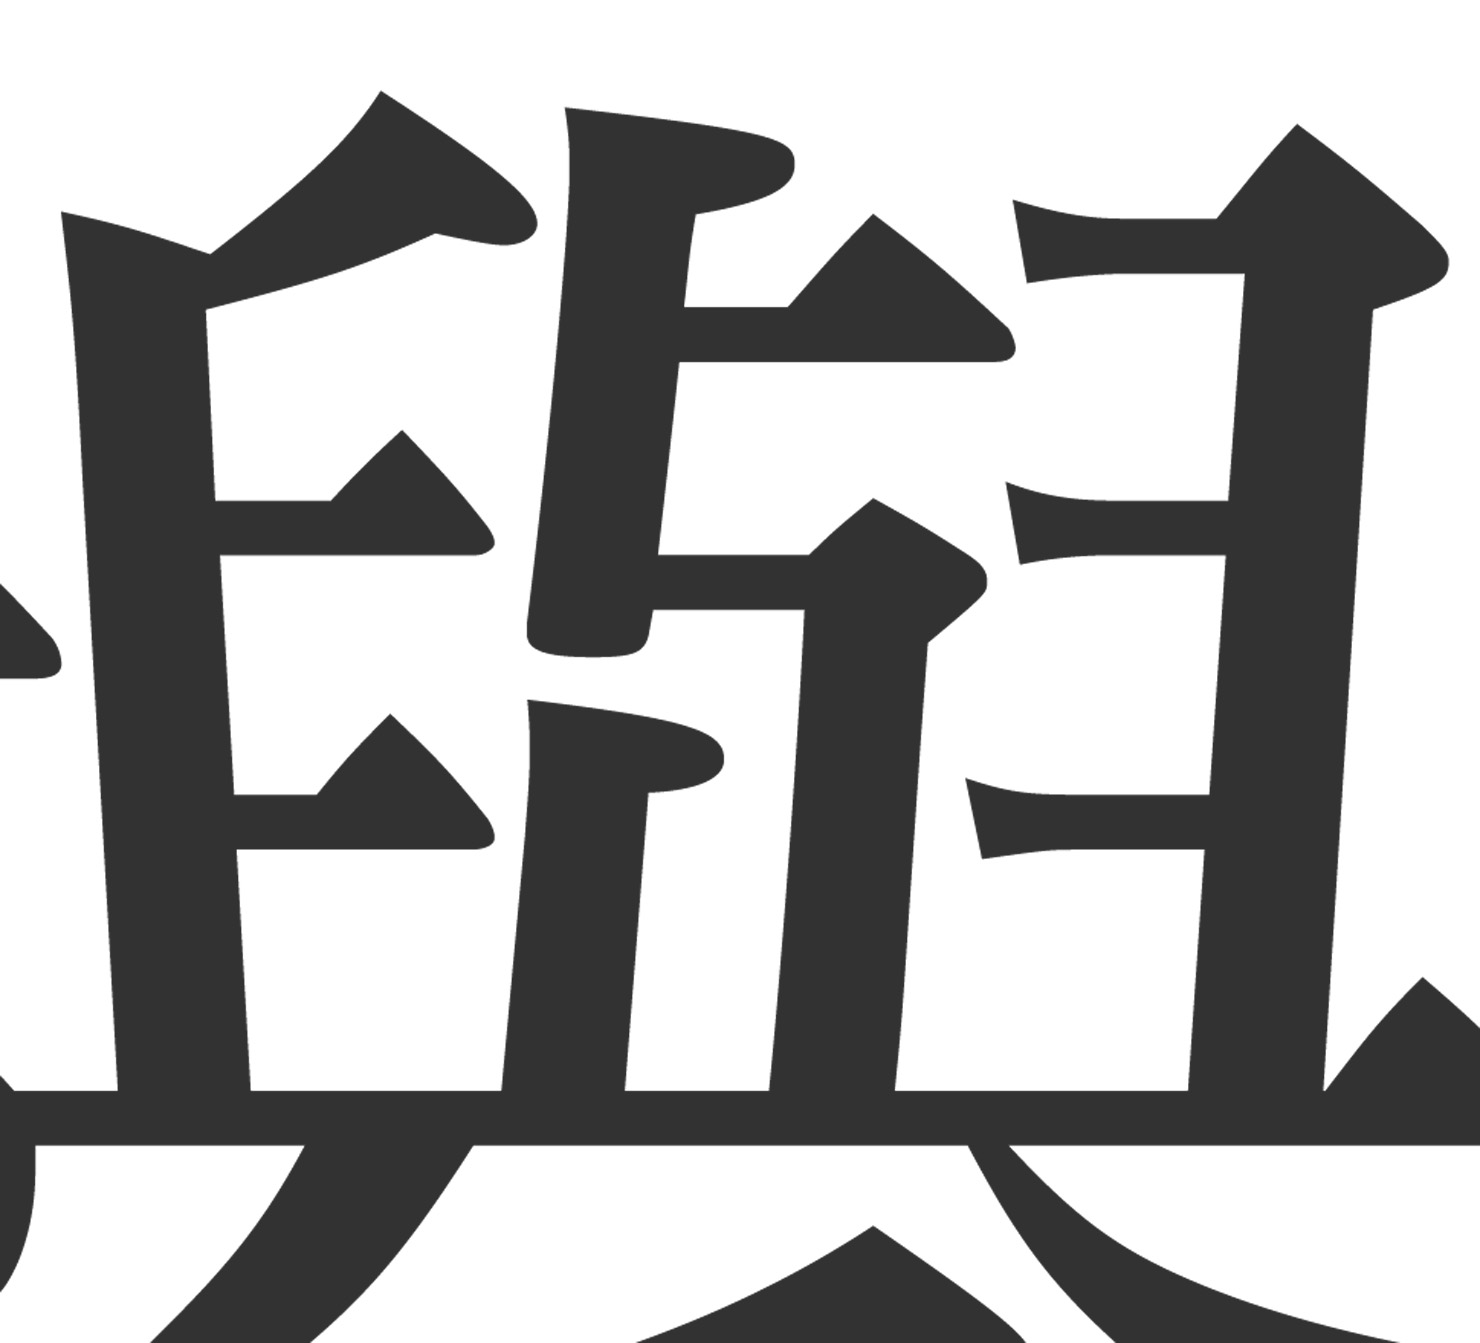 欅の漢字の憶え方 拡大で書き順 書き方もチェック 嬉しい由来も